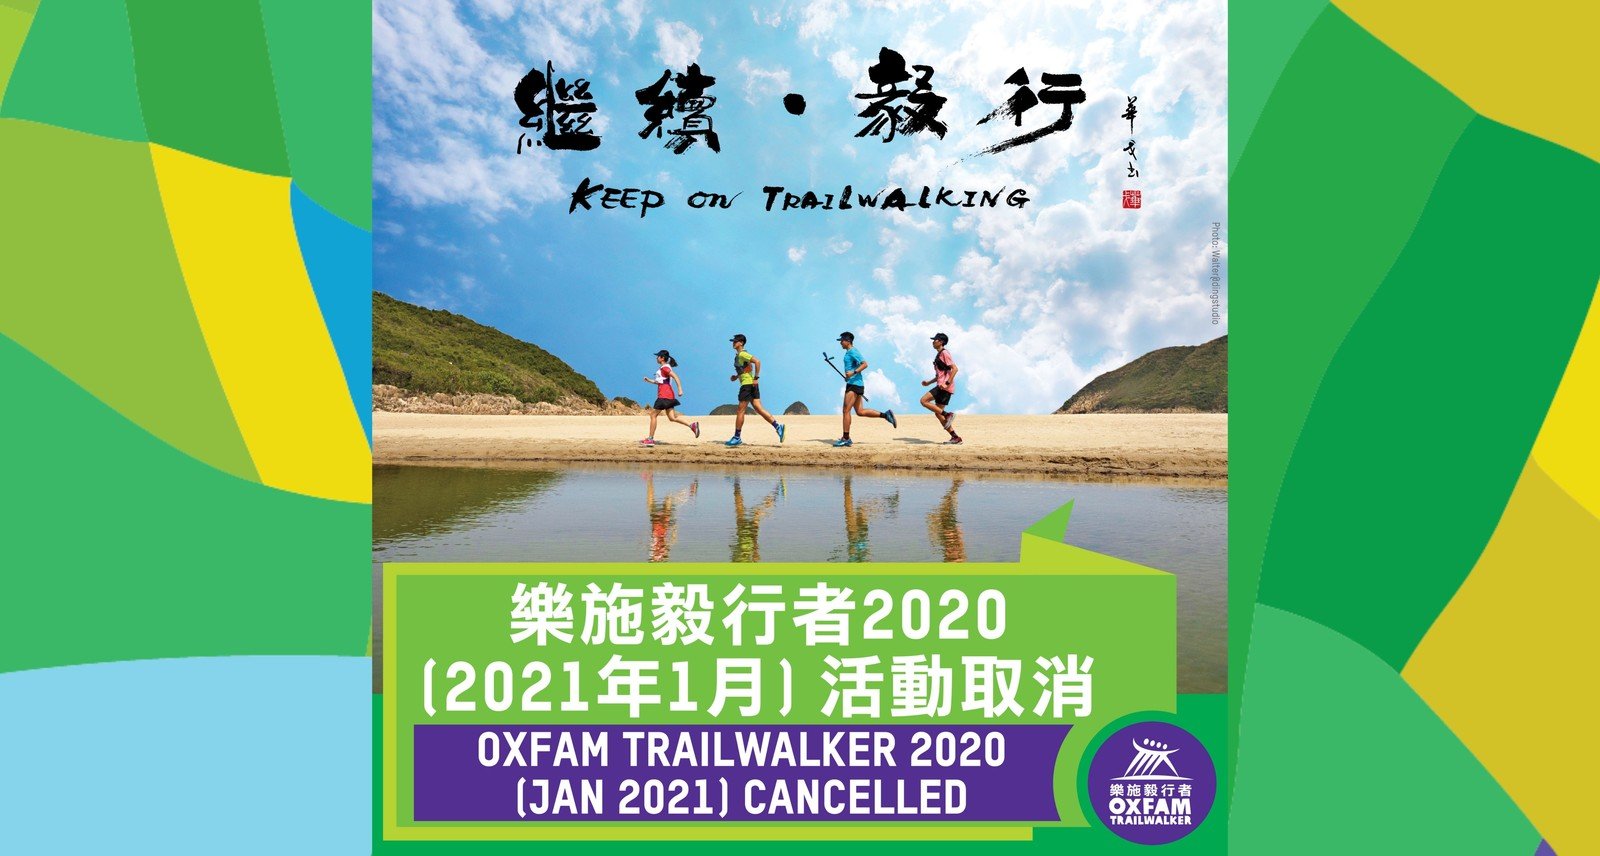 Oxfam Trailwalker 2020 (Jan 2021) cancelled